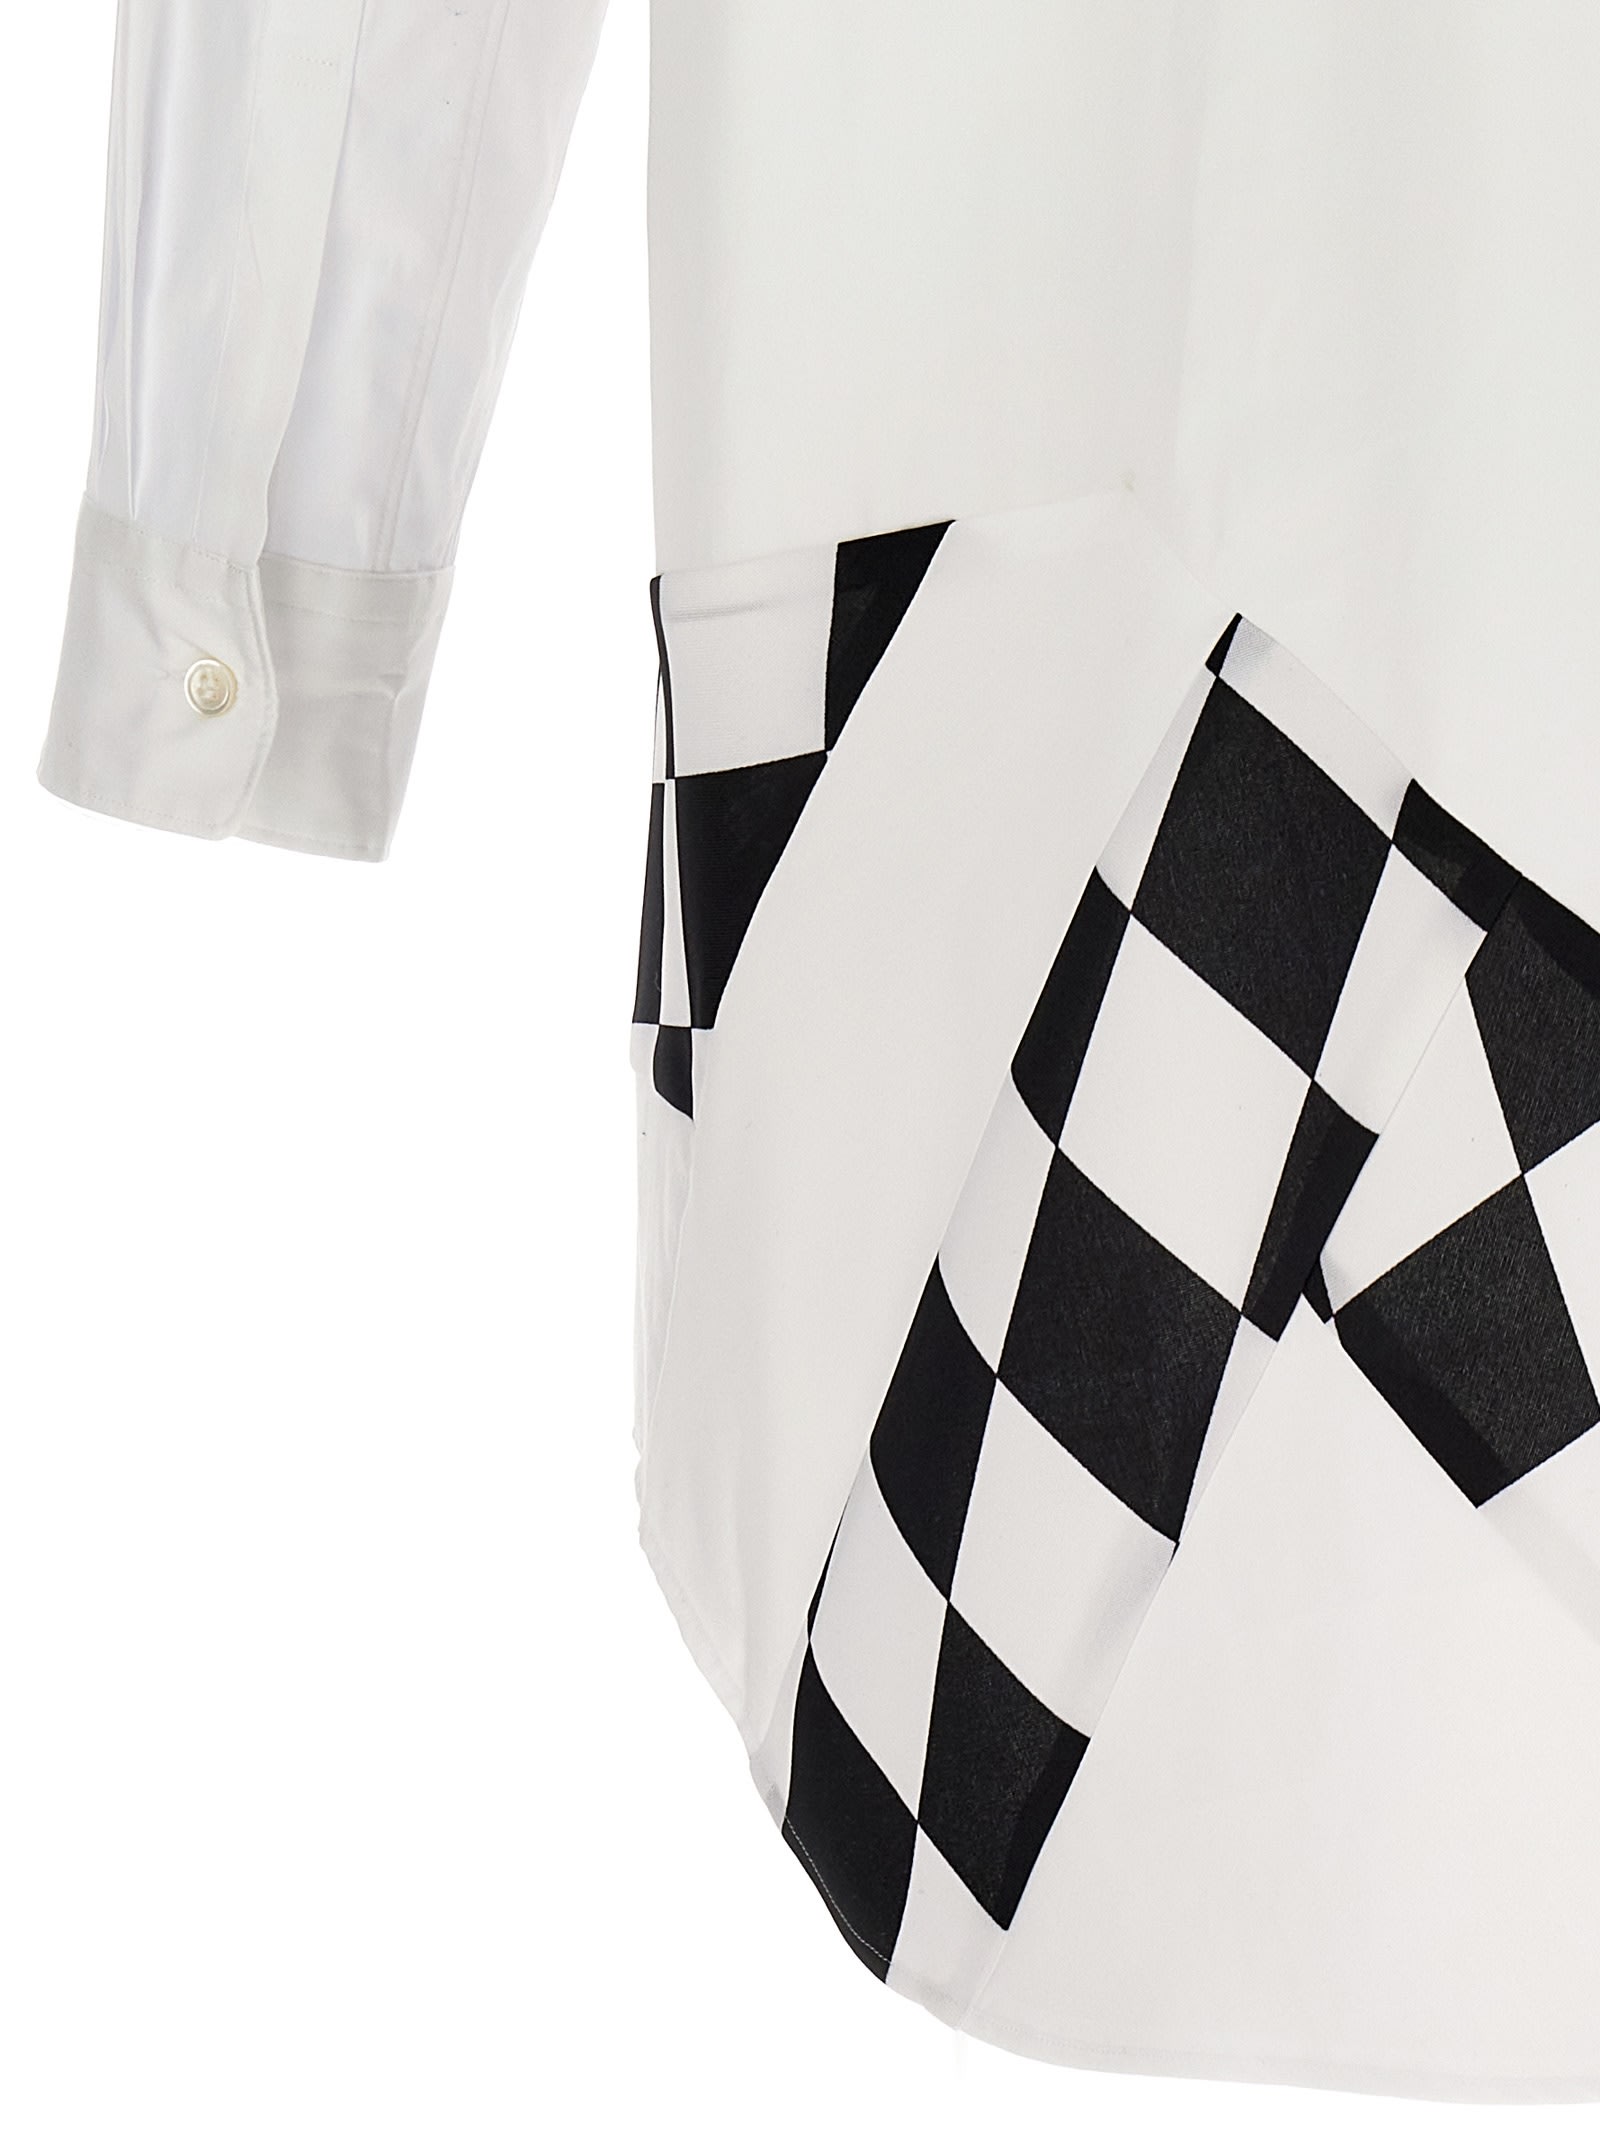 Shop Comme Des Garçons Homme Deux Checkerboard Shirt In White/black